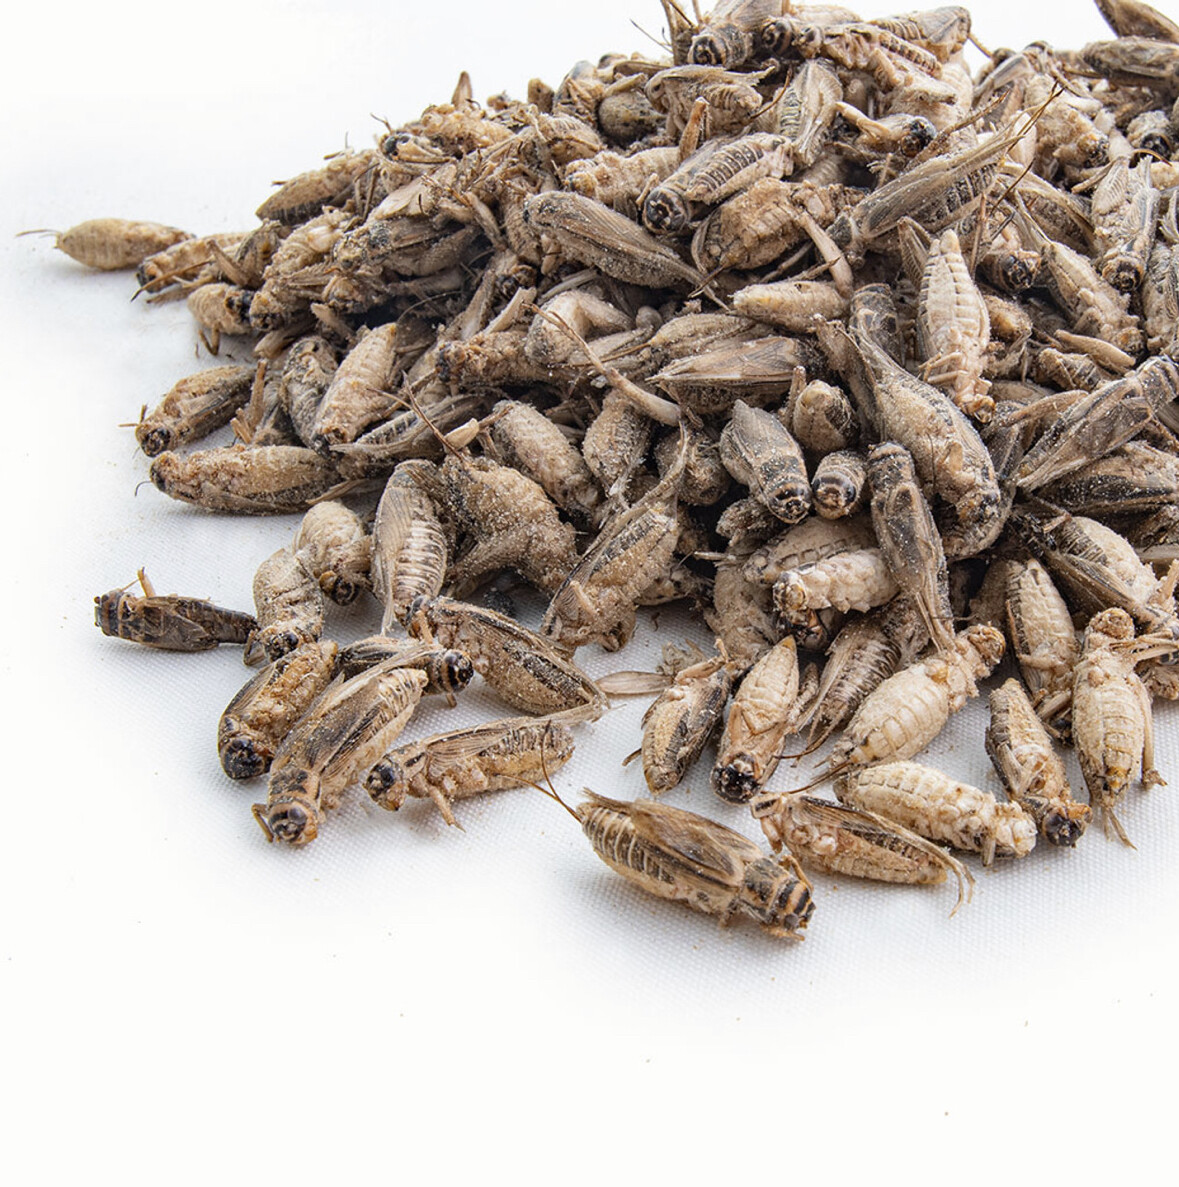 1.5 oz Freeze Dried Crickets